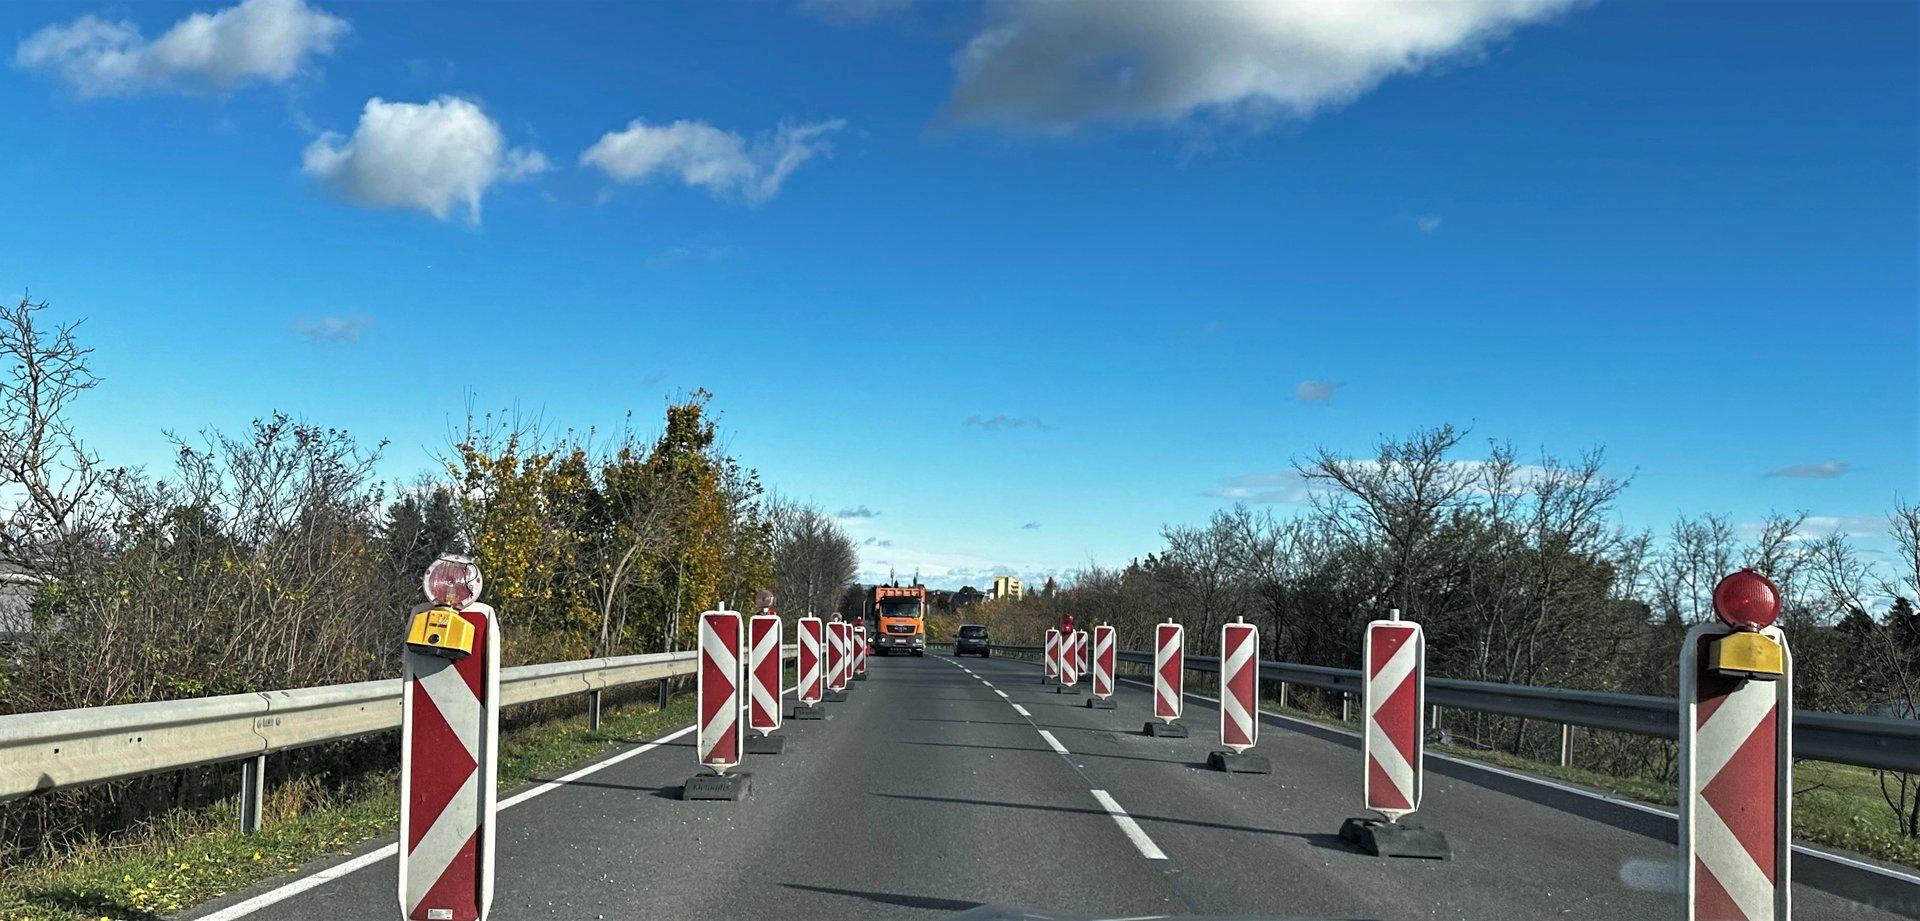 Brückensanierung: Wichtige Stadteinfahrt von Wr. Neustadt gesperrt